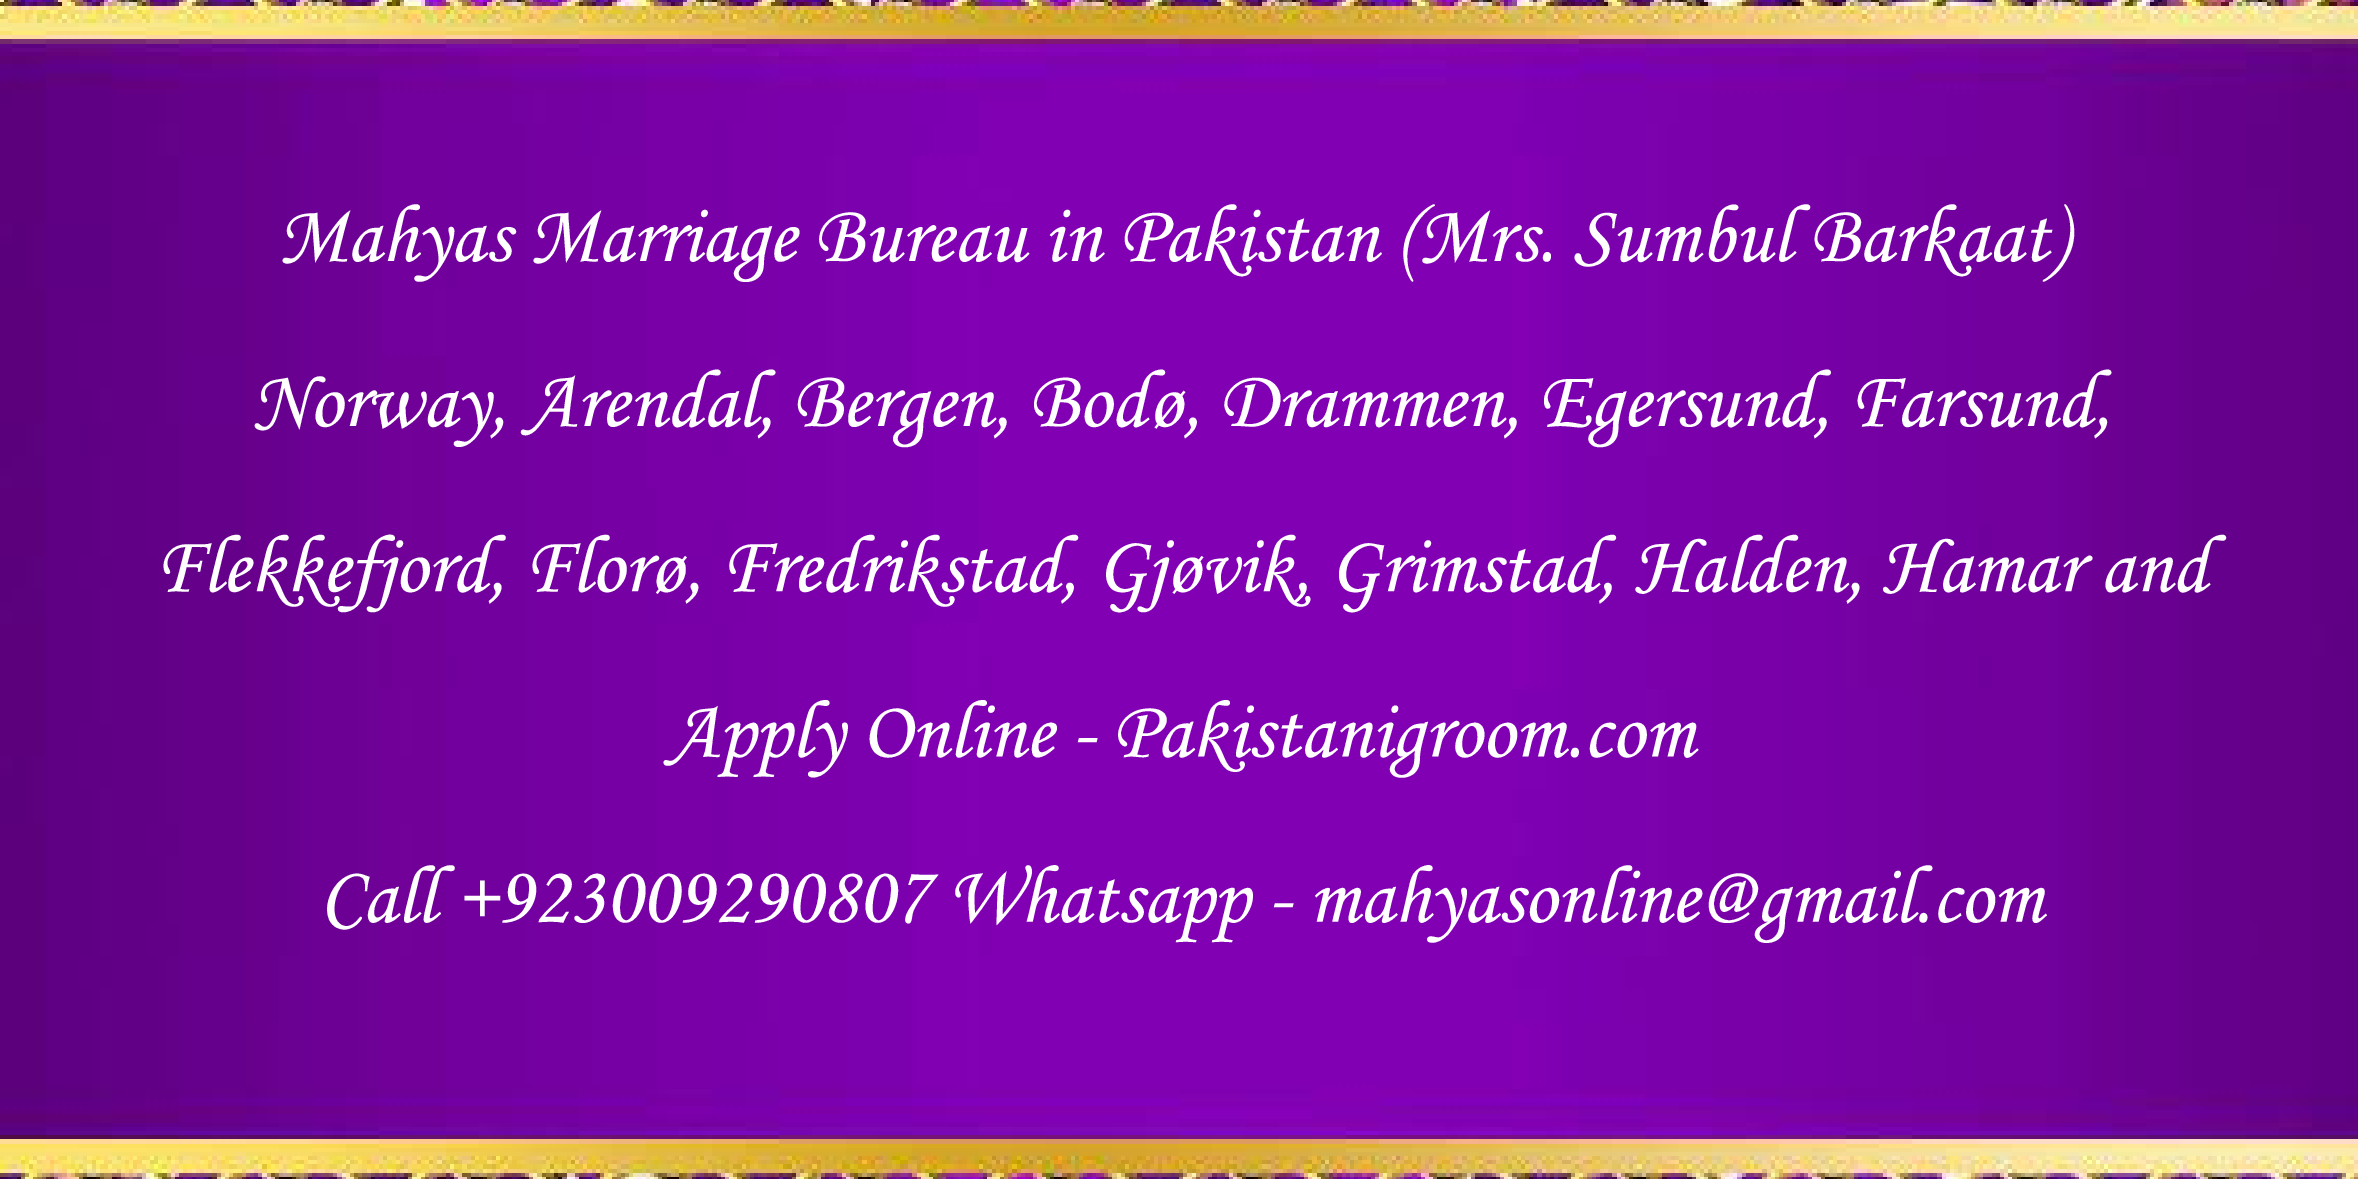 Mahyas-marriage-bureau-Karachi-Pakistan-for-Shia-Sunni-Remarriage-Divorce-Widow-Second-marriage-Punjabi-Pashto-Urdu-30.png